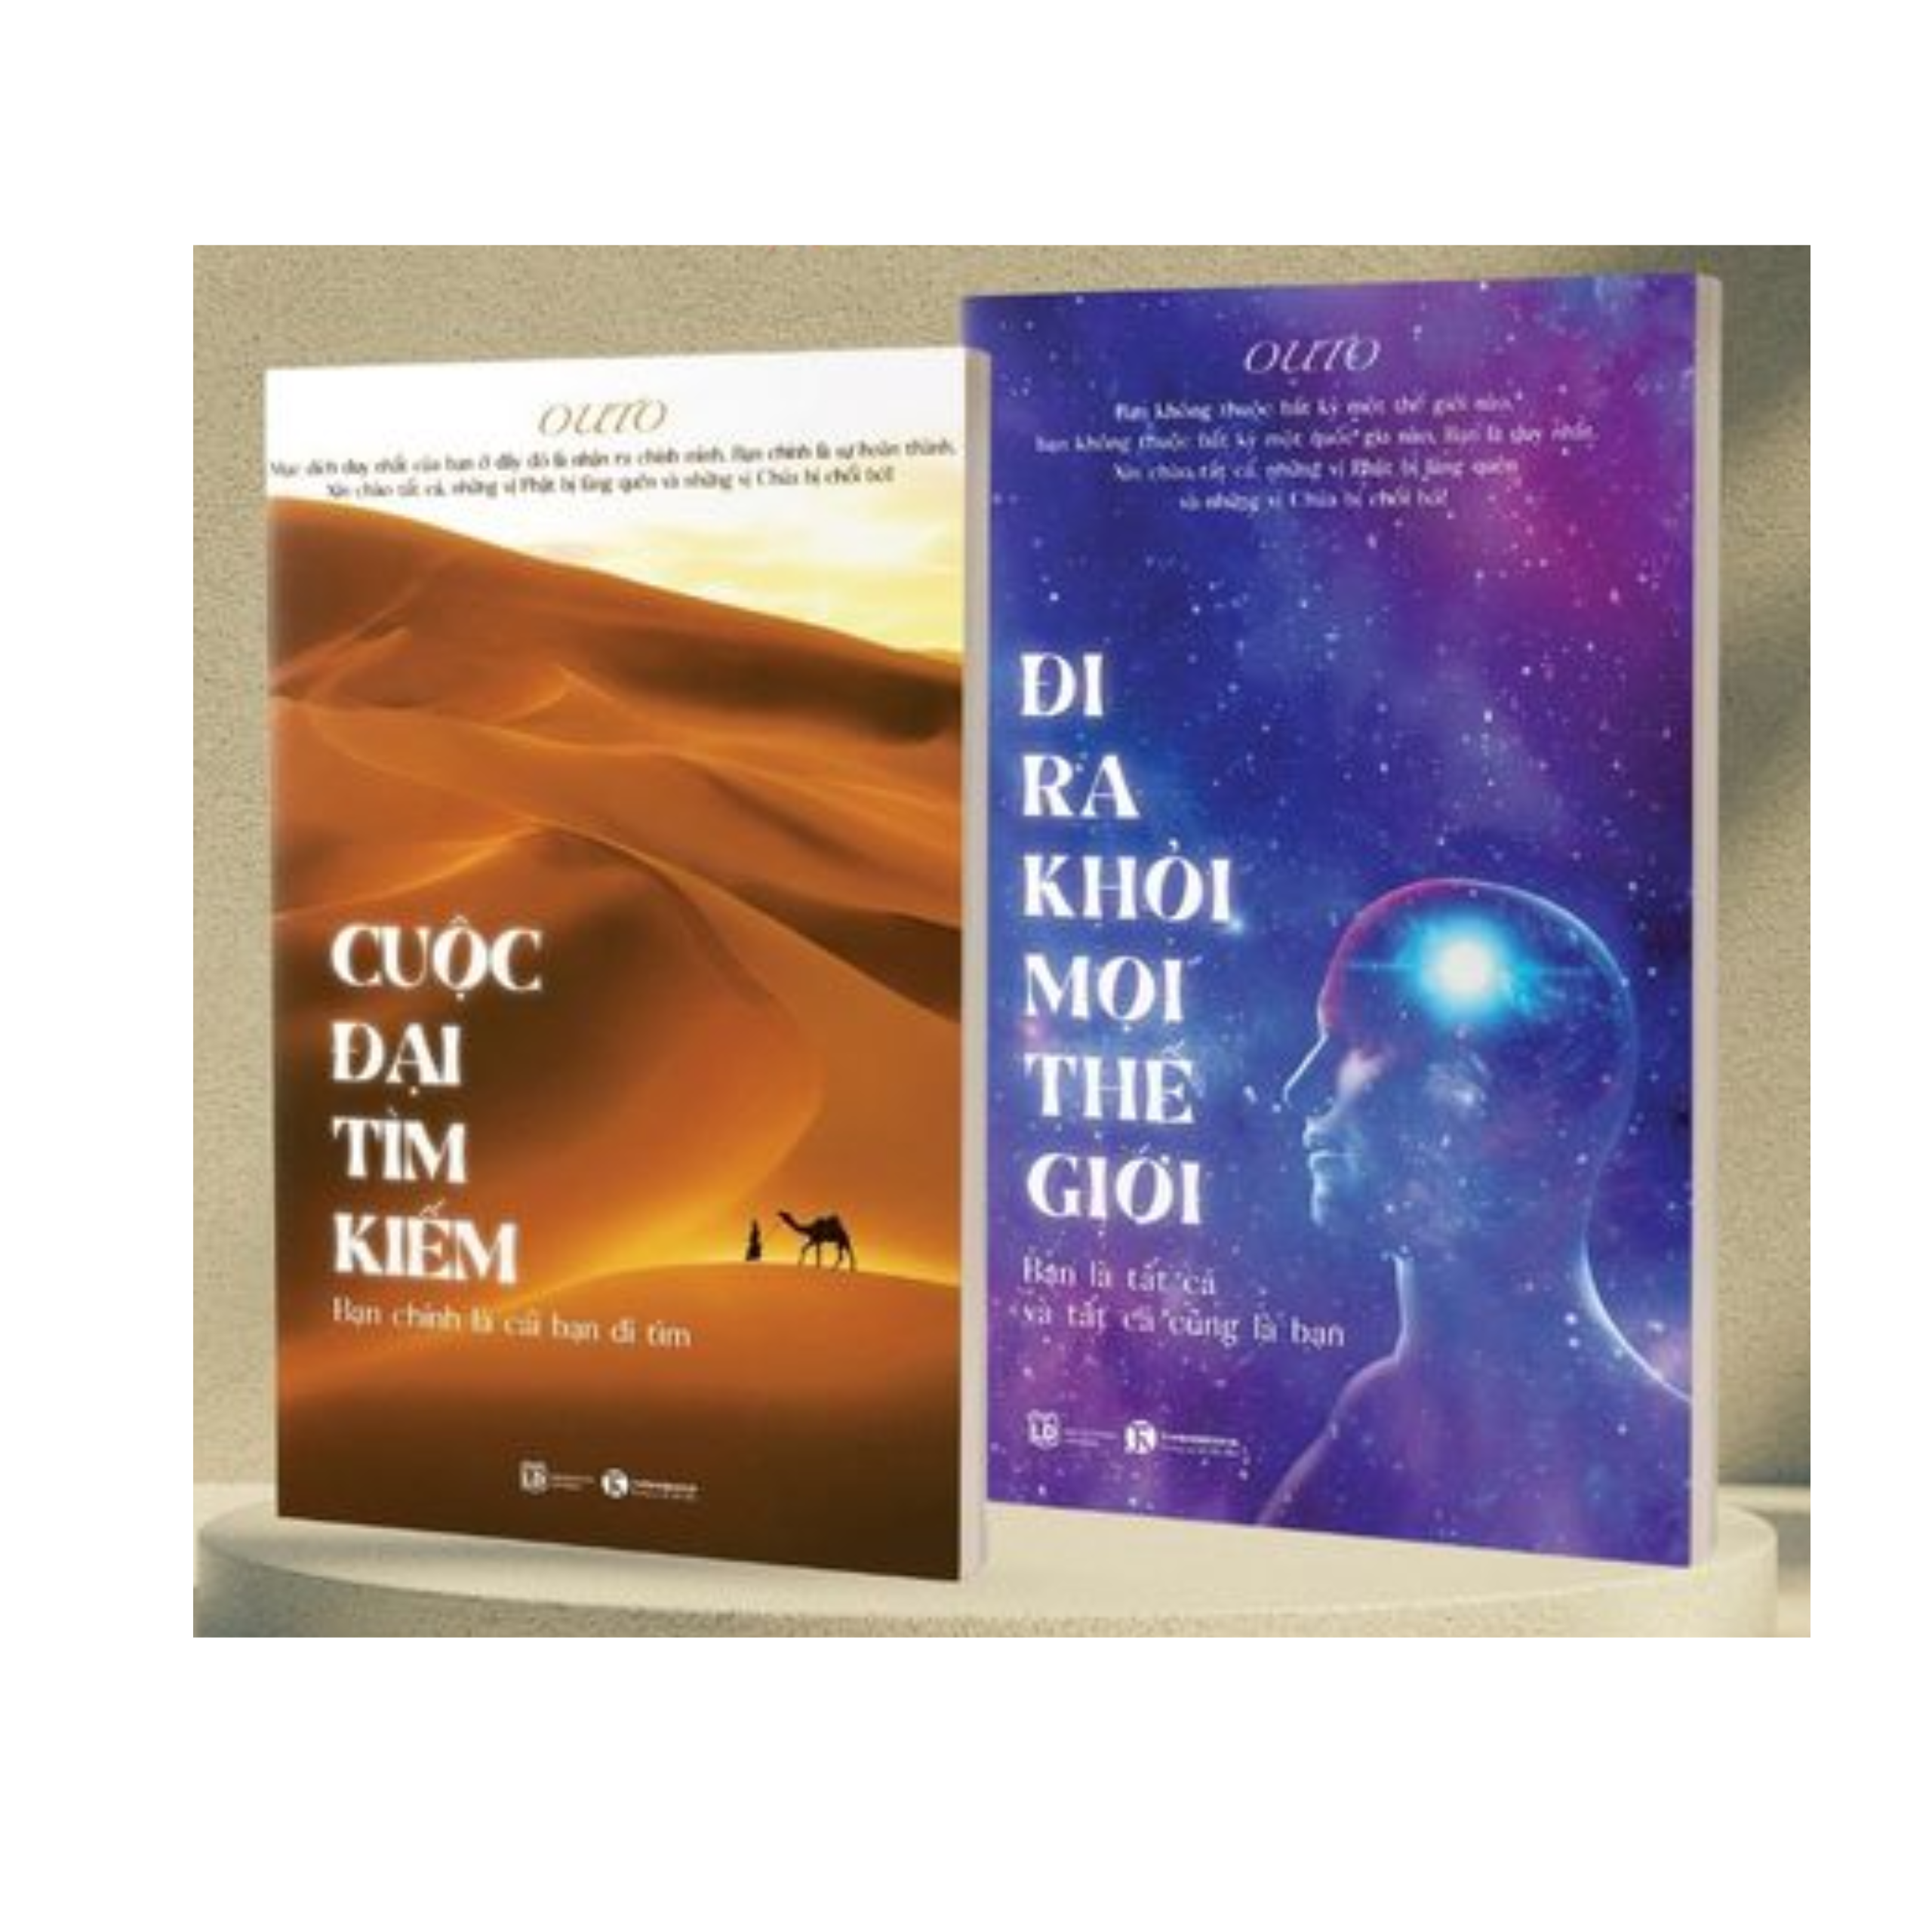 Combo 2 Cuốn sách: Bộ Sách Outo - Hành Trình Trở Về Chính Mình : Cuộc Đại Tìm Kiếm - Bạn Chính Là Cái Bạn Đi Tìm  +  Đi Ra Khỏi Mọi Thế Giới